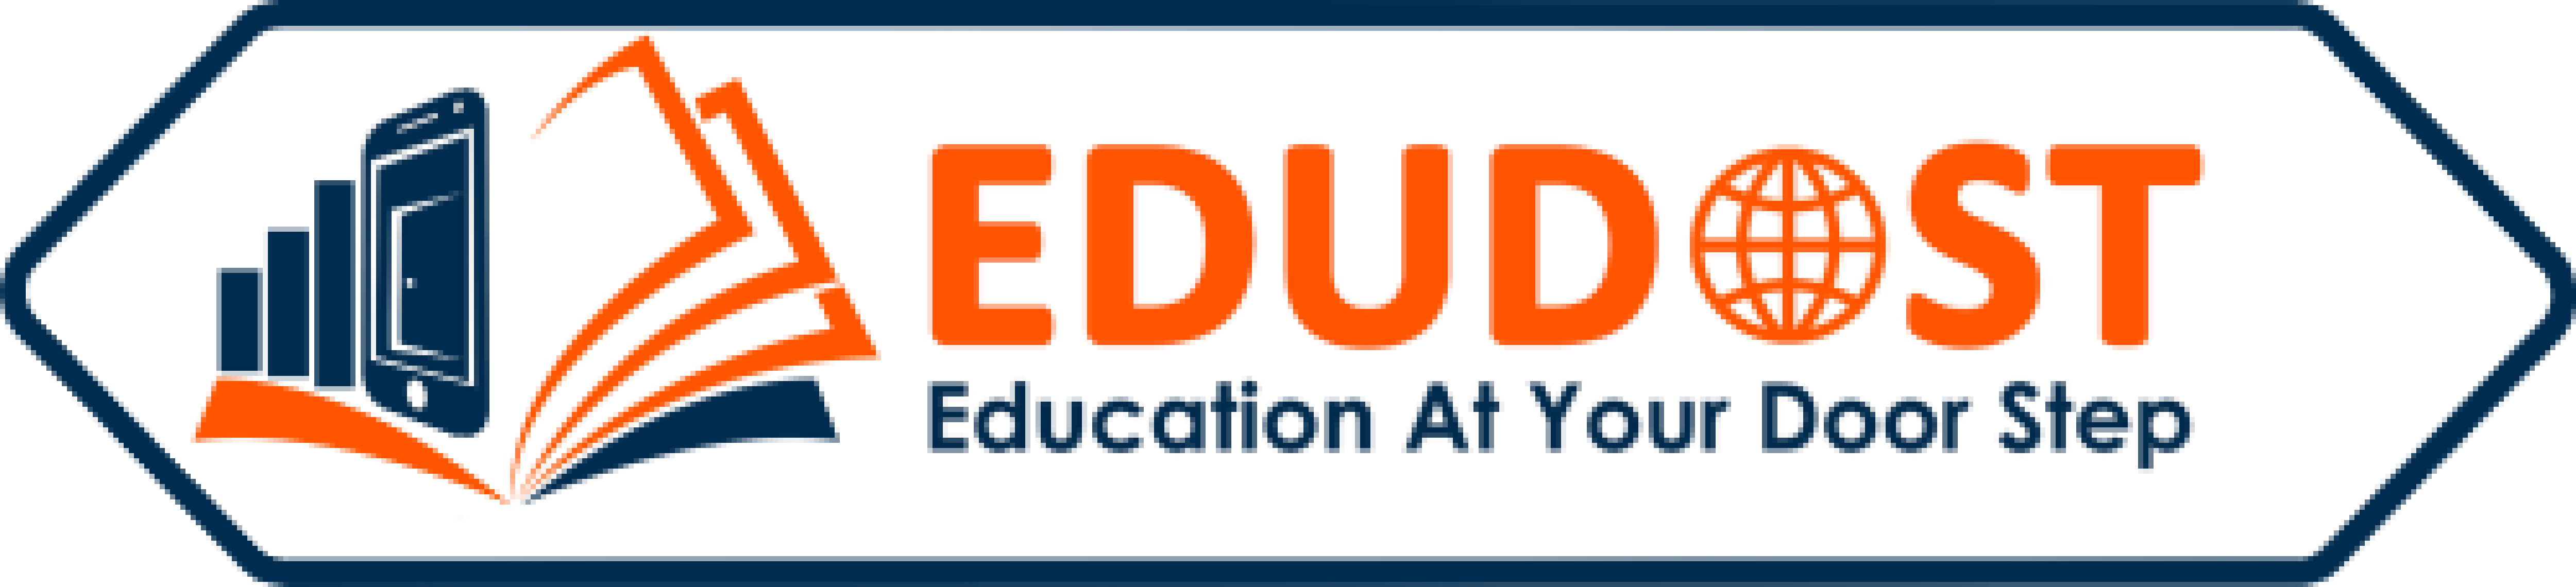 EDUDOST logo